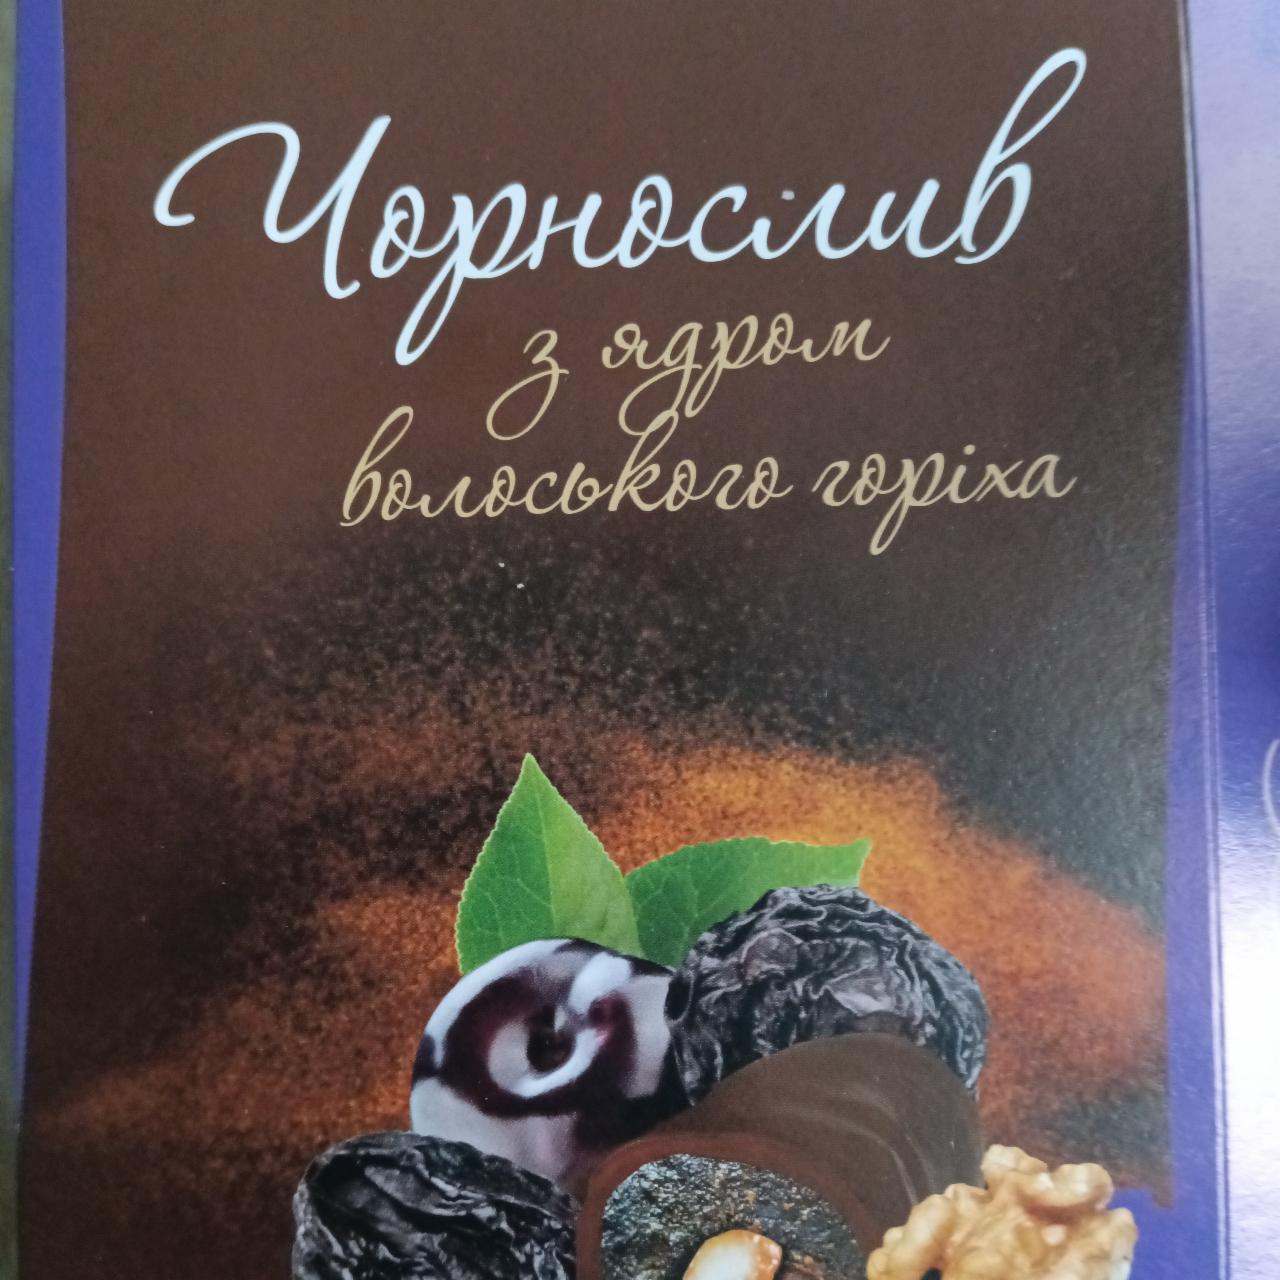 Фото - Конфеты в коробке Чернослив с ядром грецкого ореха Волинські солодощі